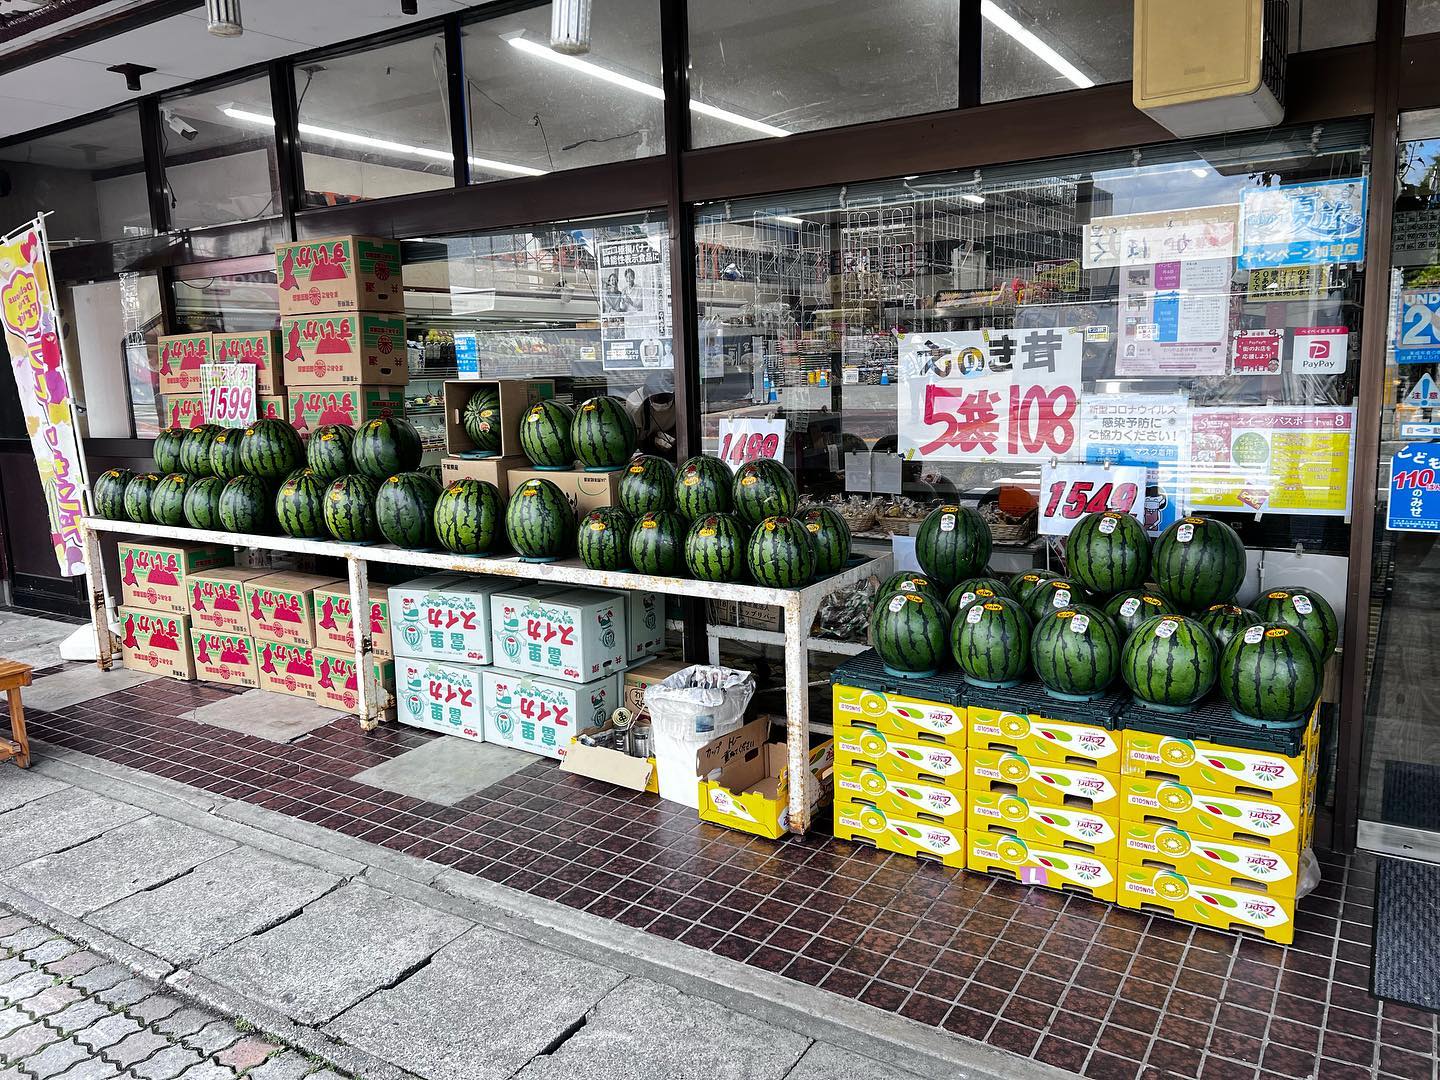 店頭は【夏】
まる朝、富里と産地は千葉県
お手頃なMAサイズ入りました。
おすすめは2Lのスイカ1,599円だな️